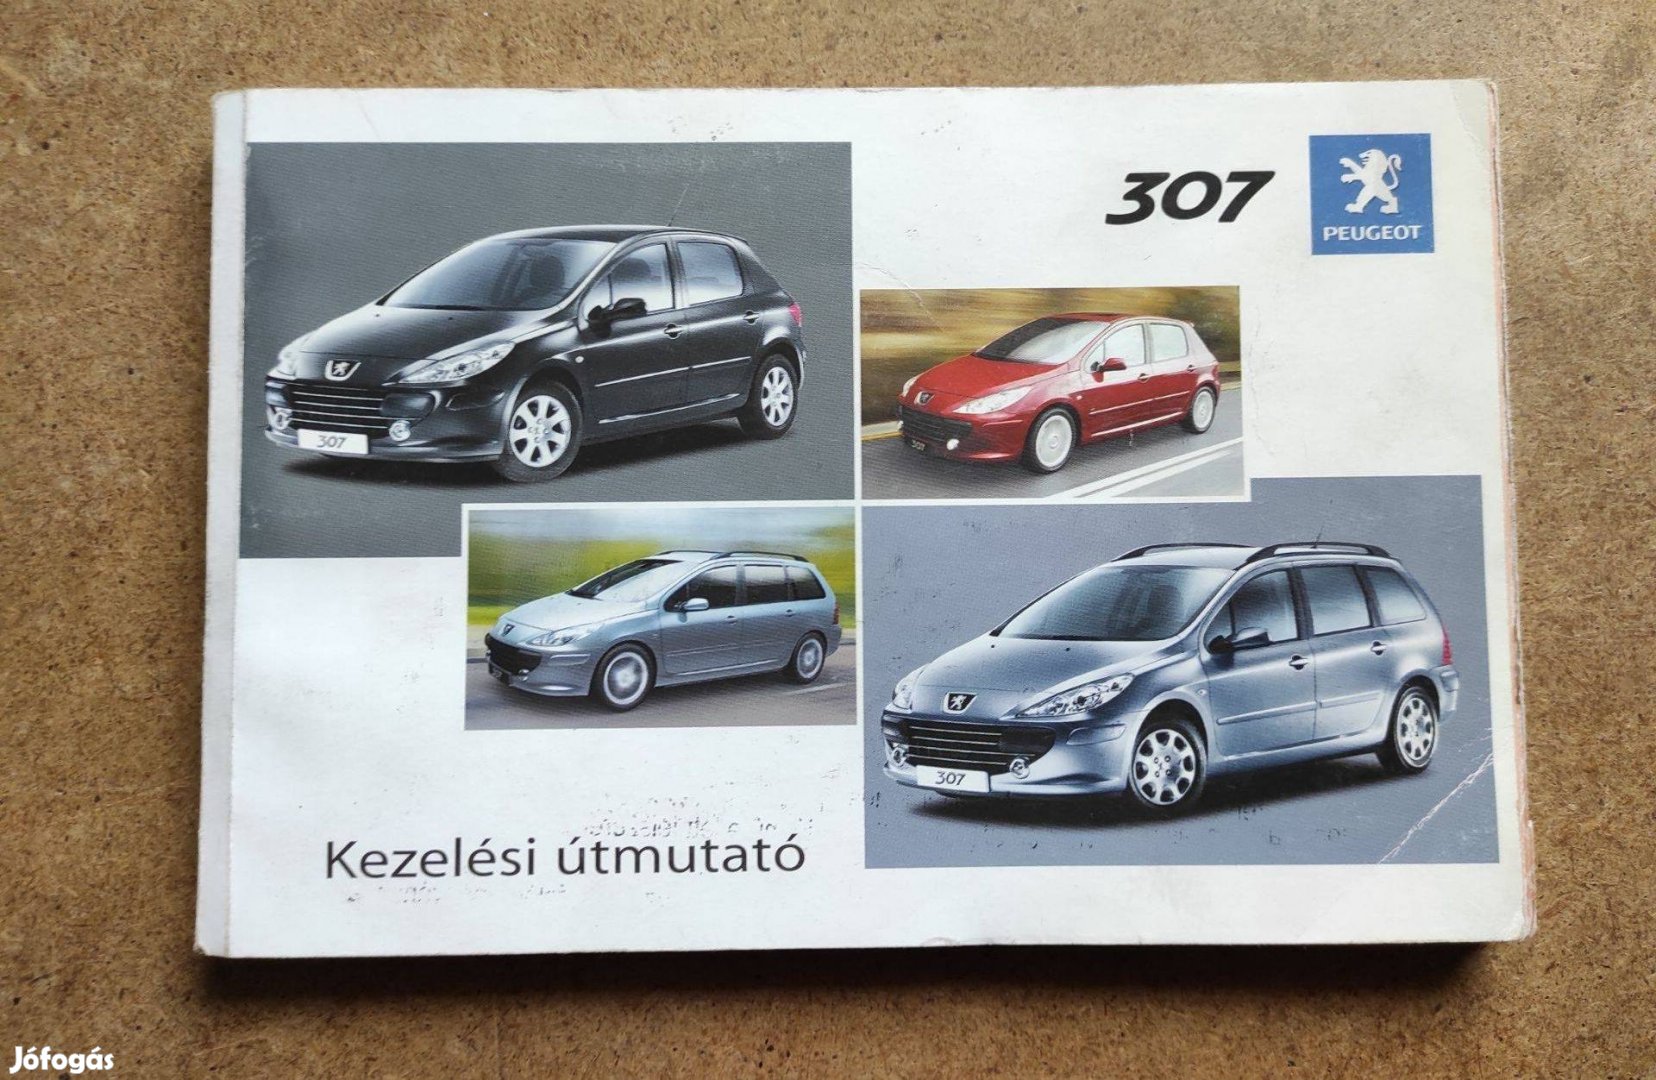 Peugeot 307 kezelési útmutató. 2006.03-